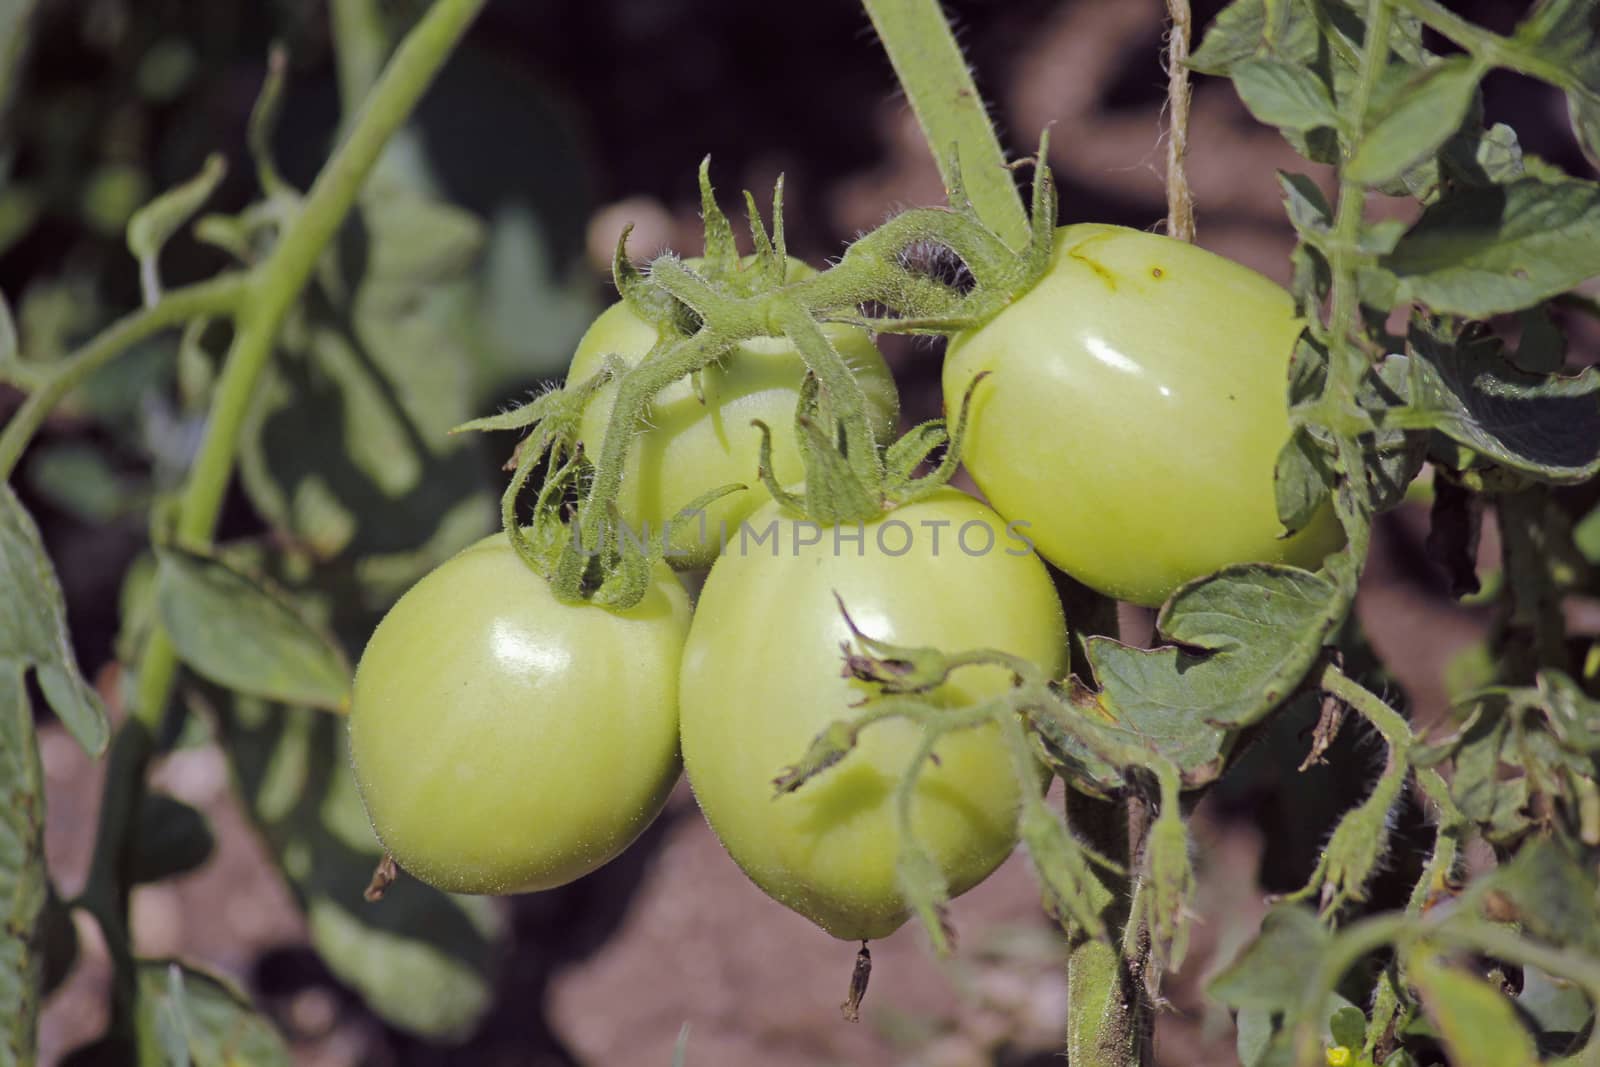 Lycopersicon esculentum, Solanum lycopersicum by yands